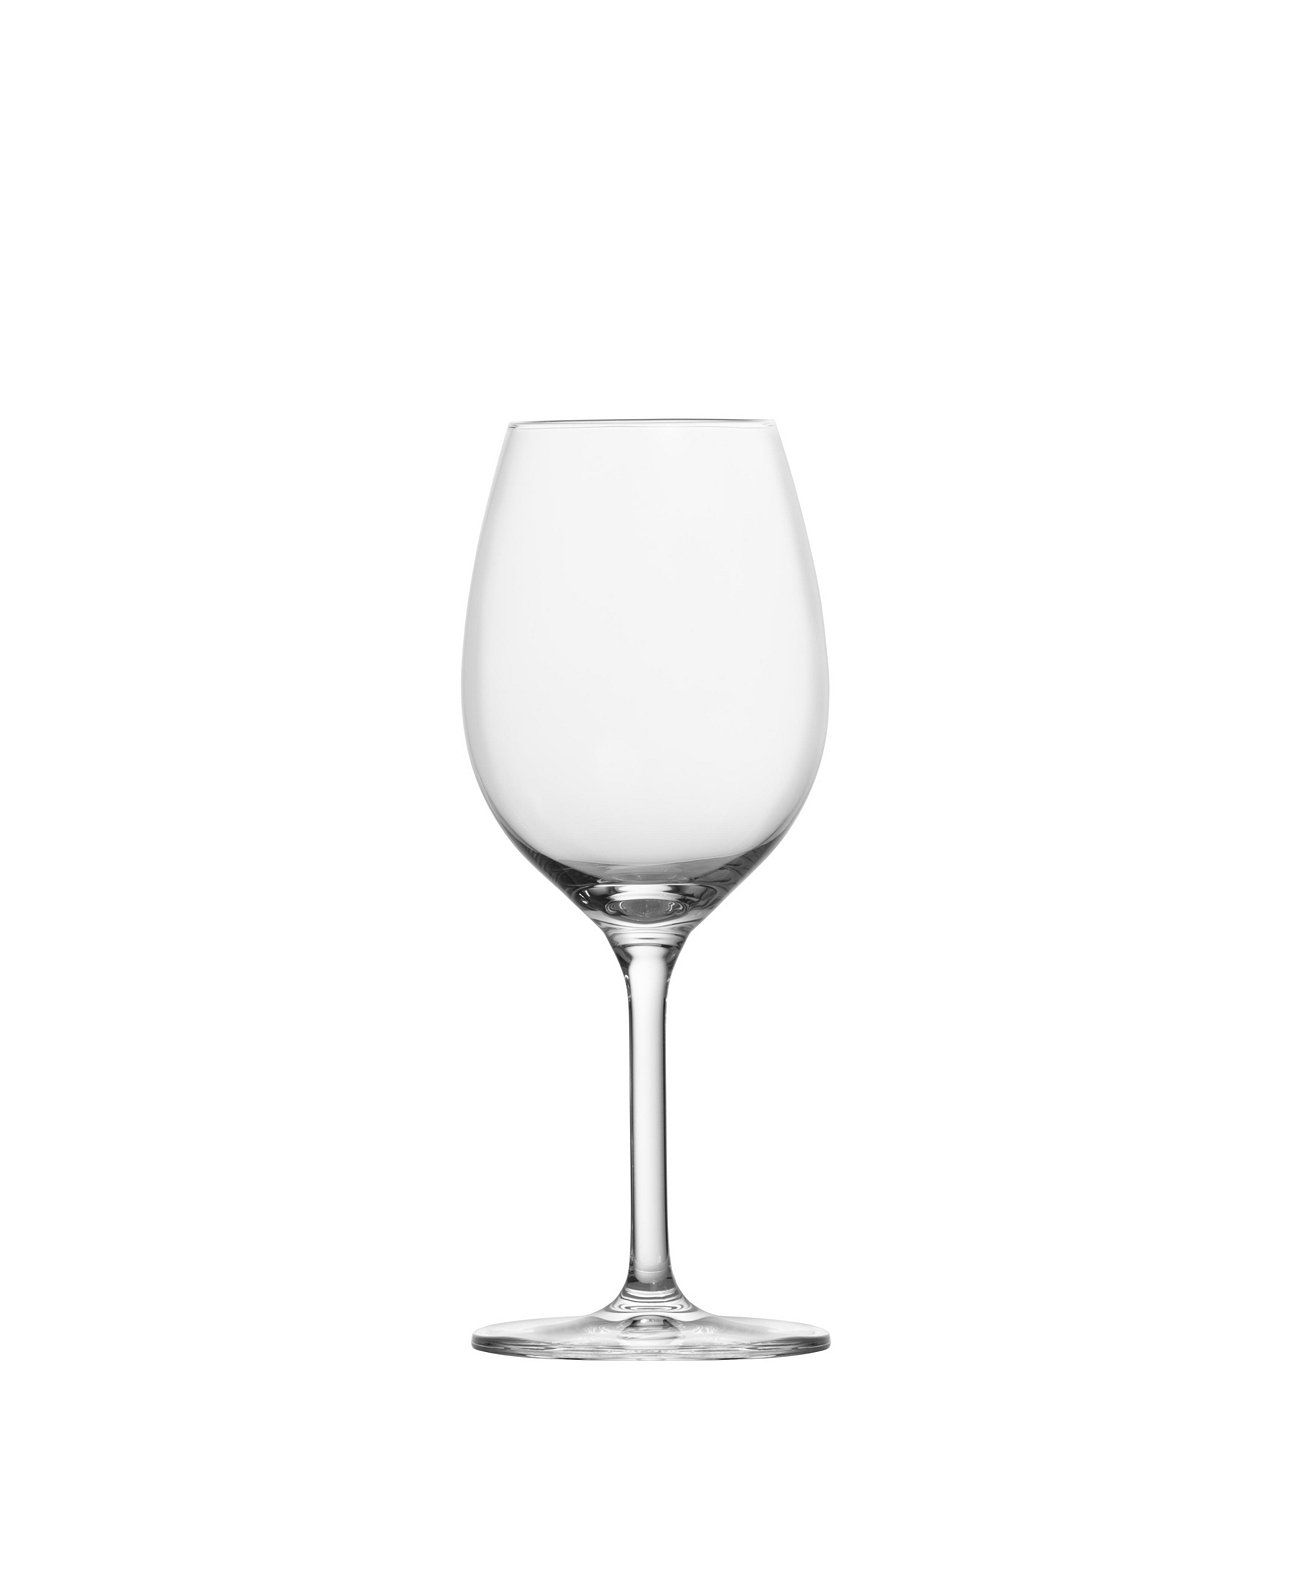 Банкетные бокалы для вина Совиньон Блан, набор из 6 шт. Schott Zwiesel